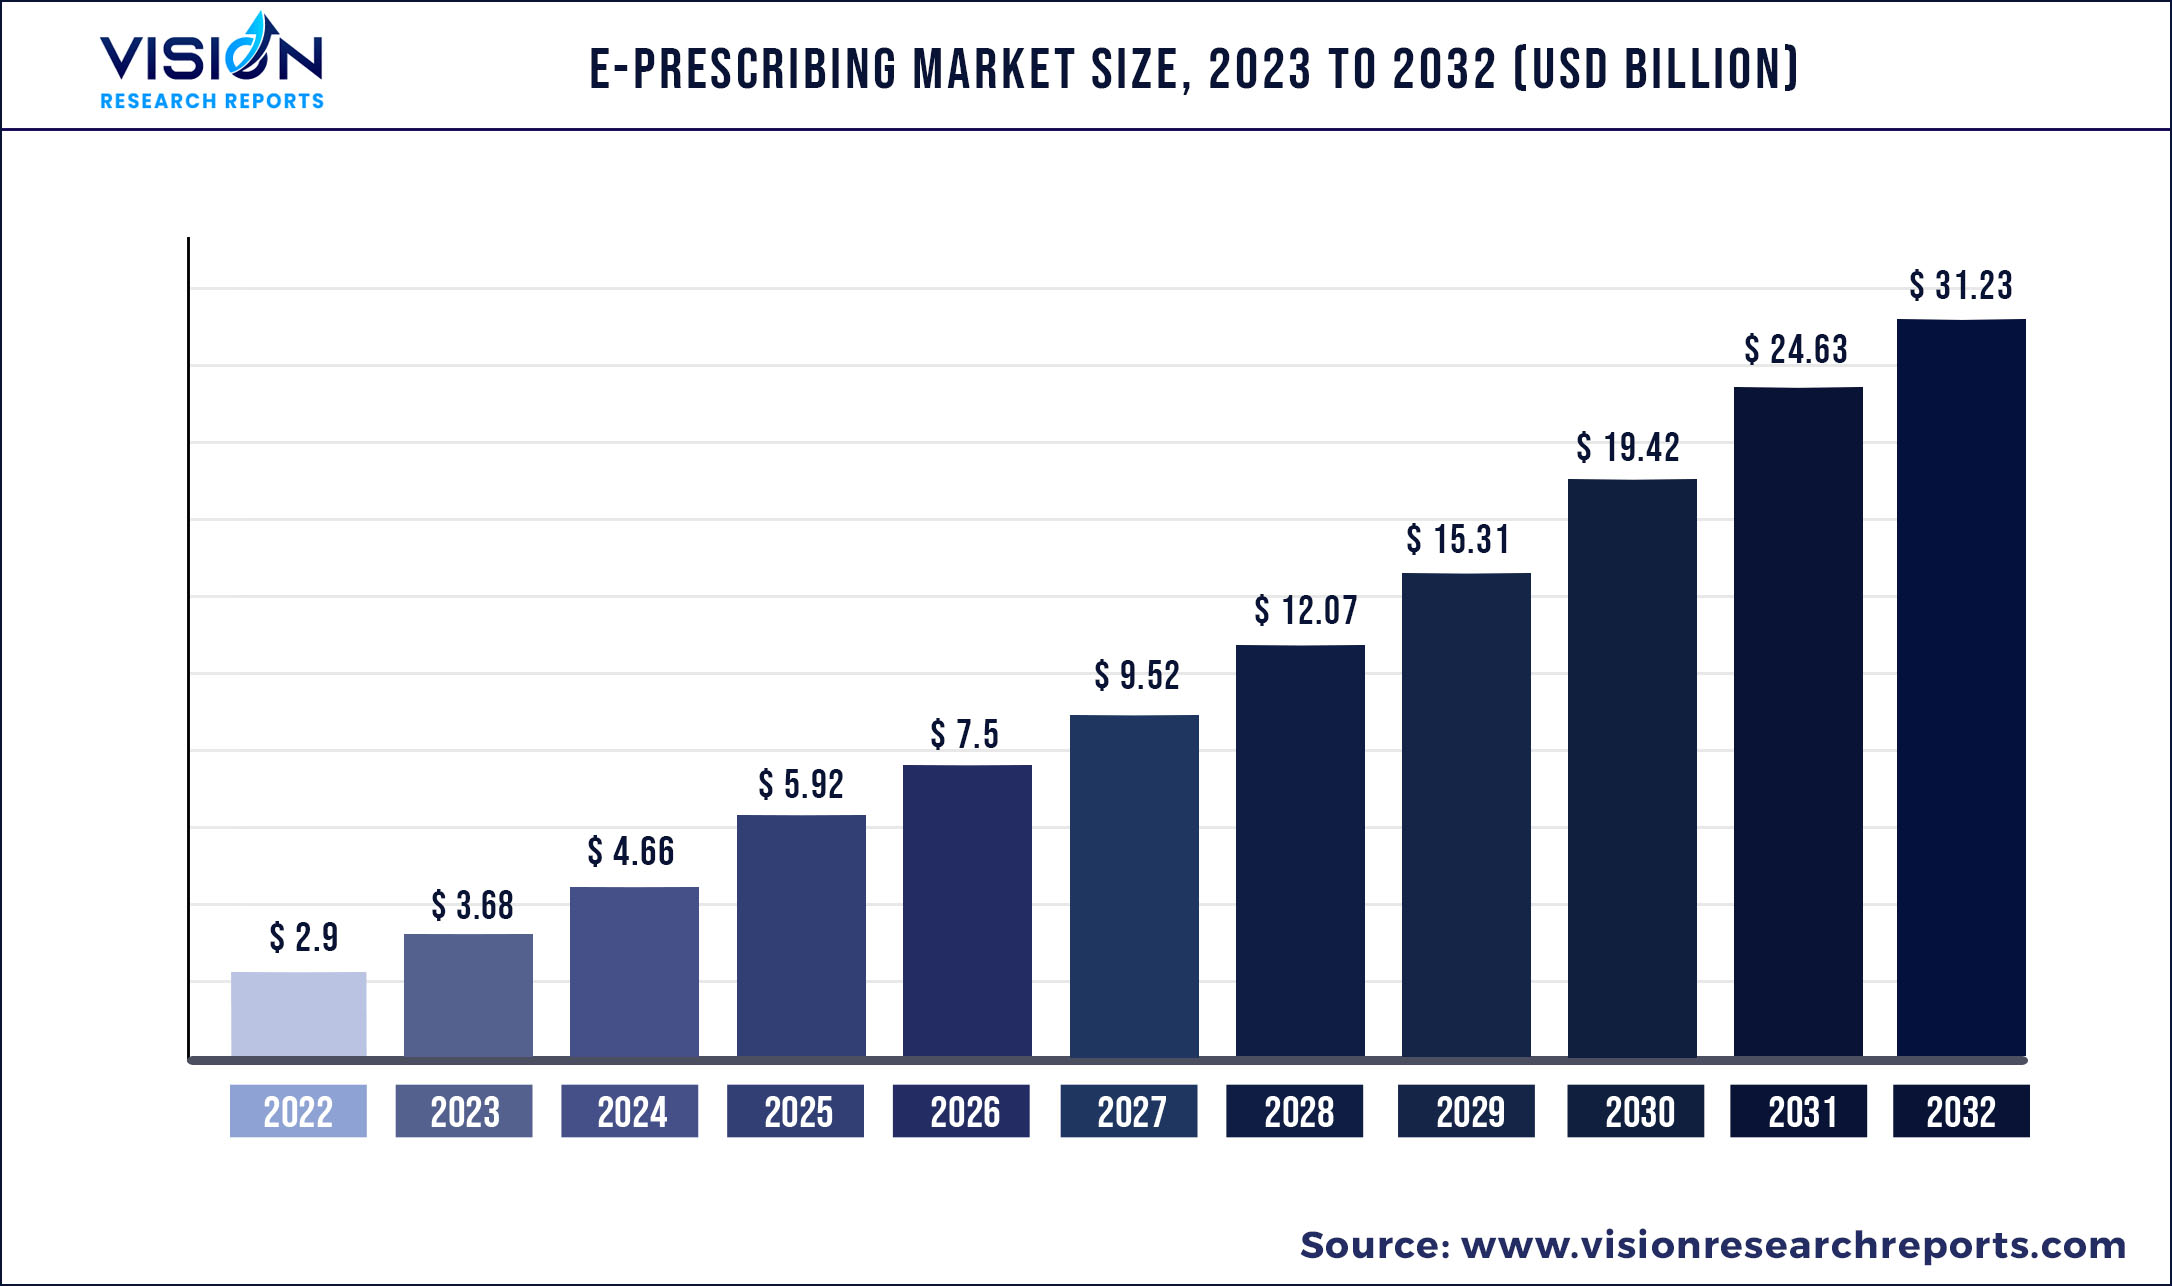 E-Prescribing Market Size 2023 to 2032